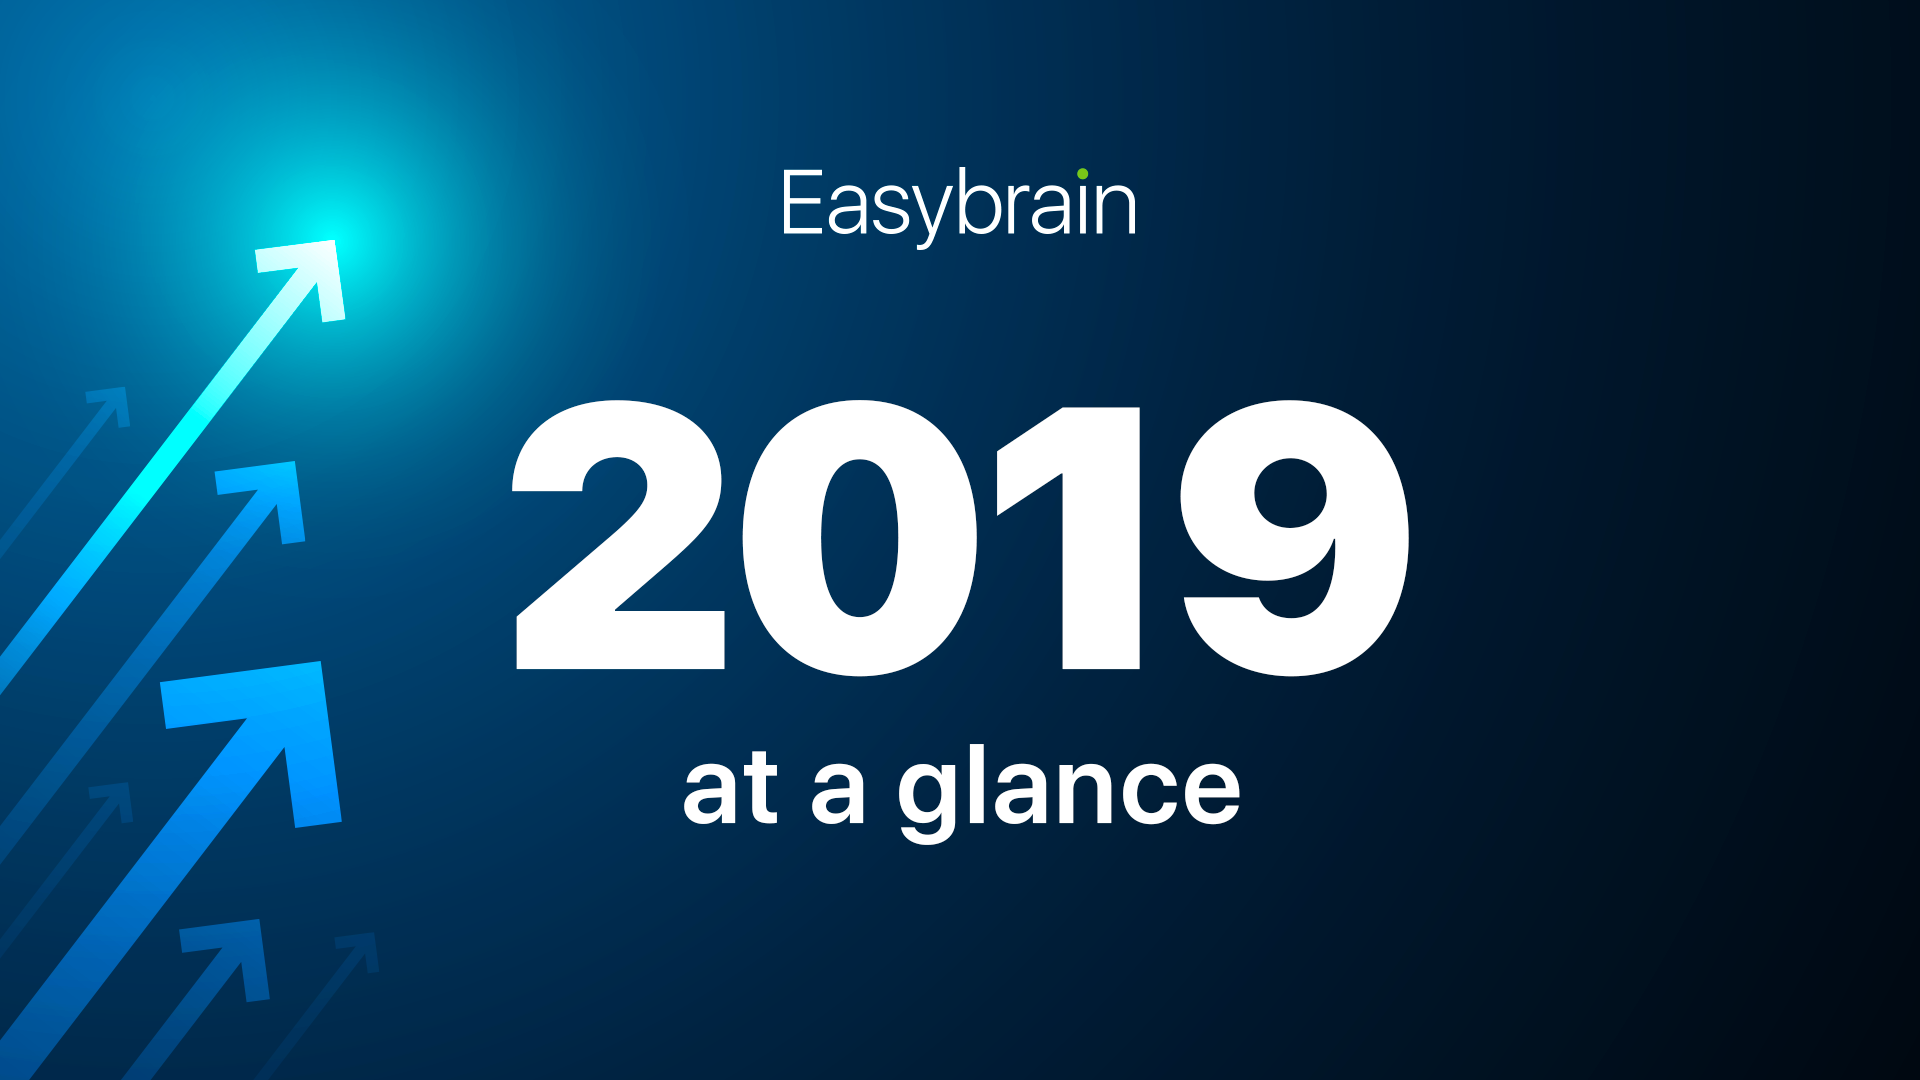 Easybrain 2019 at a glance